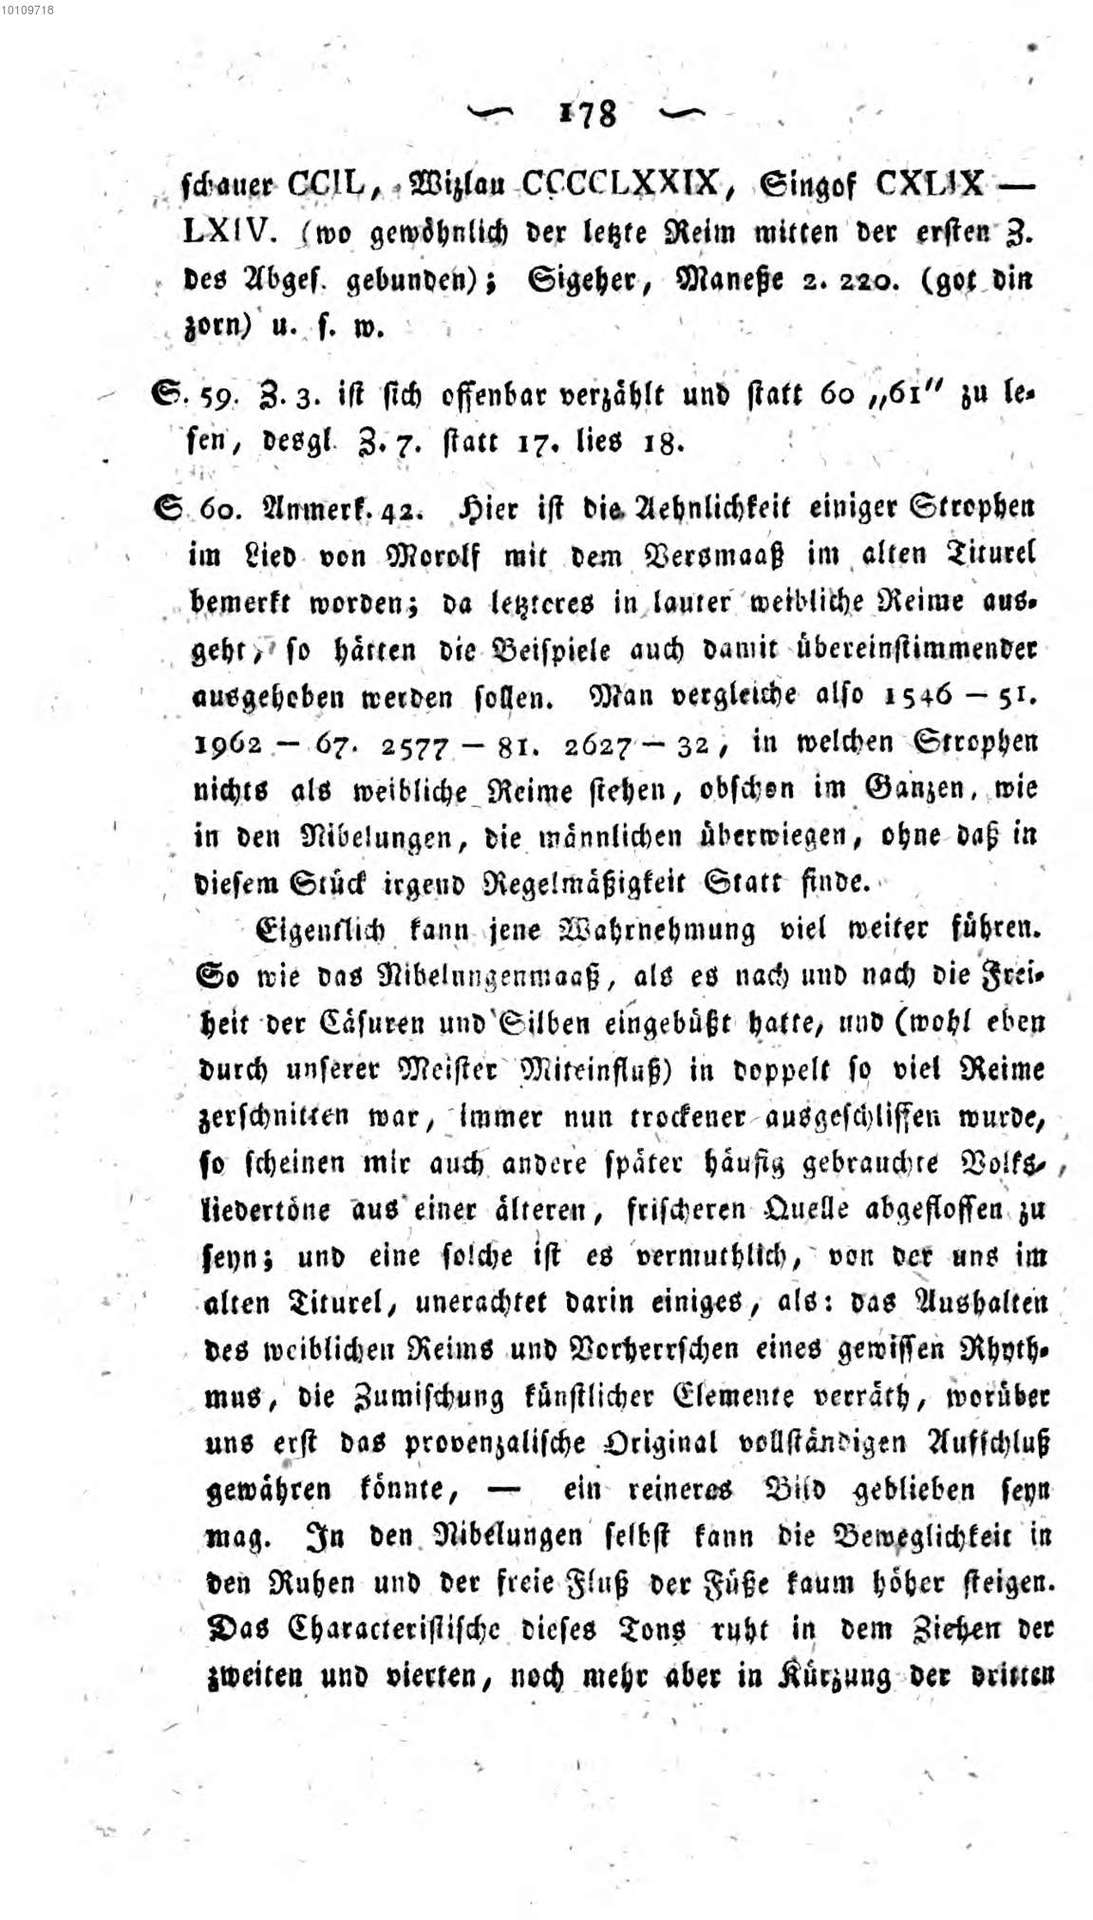 Grimm_J_-_Ueber_den_altdeutschen_Meistergesang-179.jpg